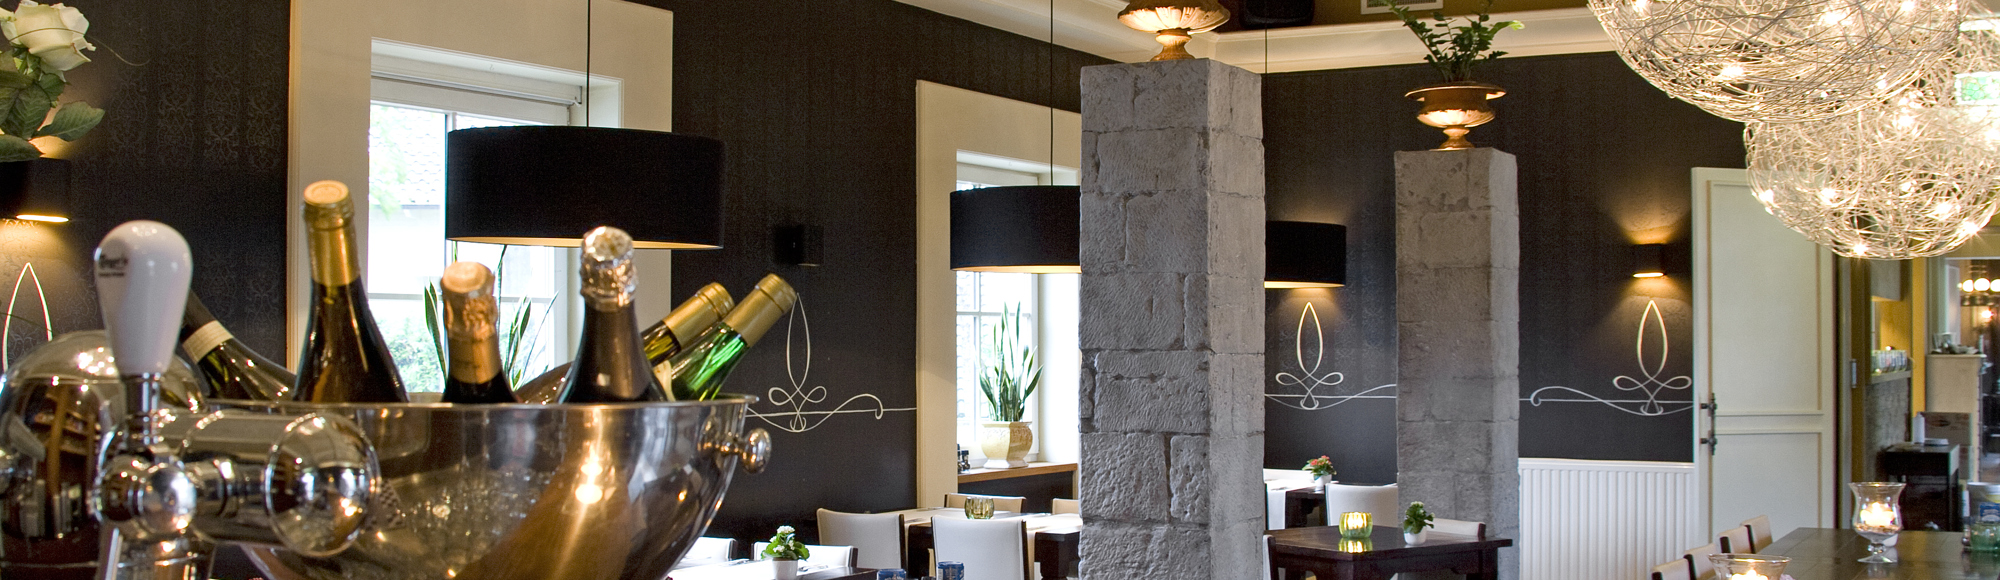 Interieur van een restaurant met sfeervolle kaarsjes en een grote wijnkoeler op de bar. 